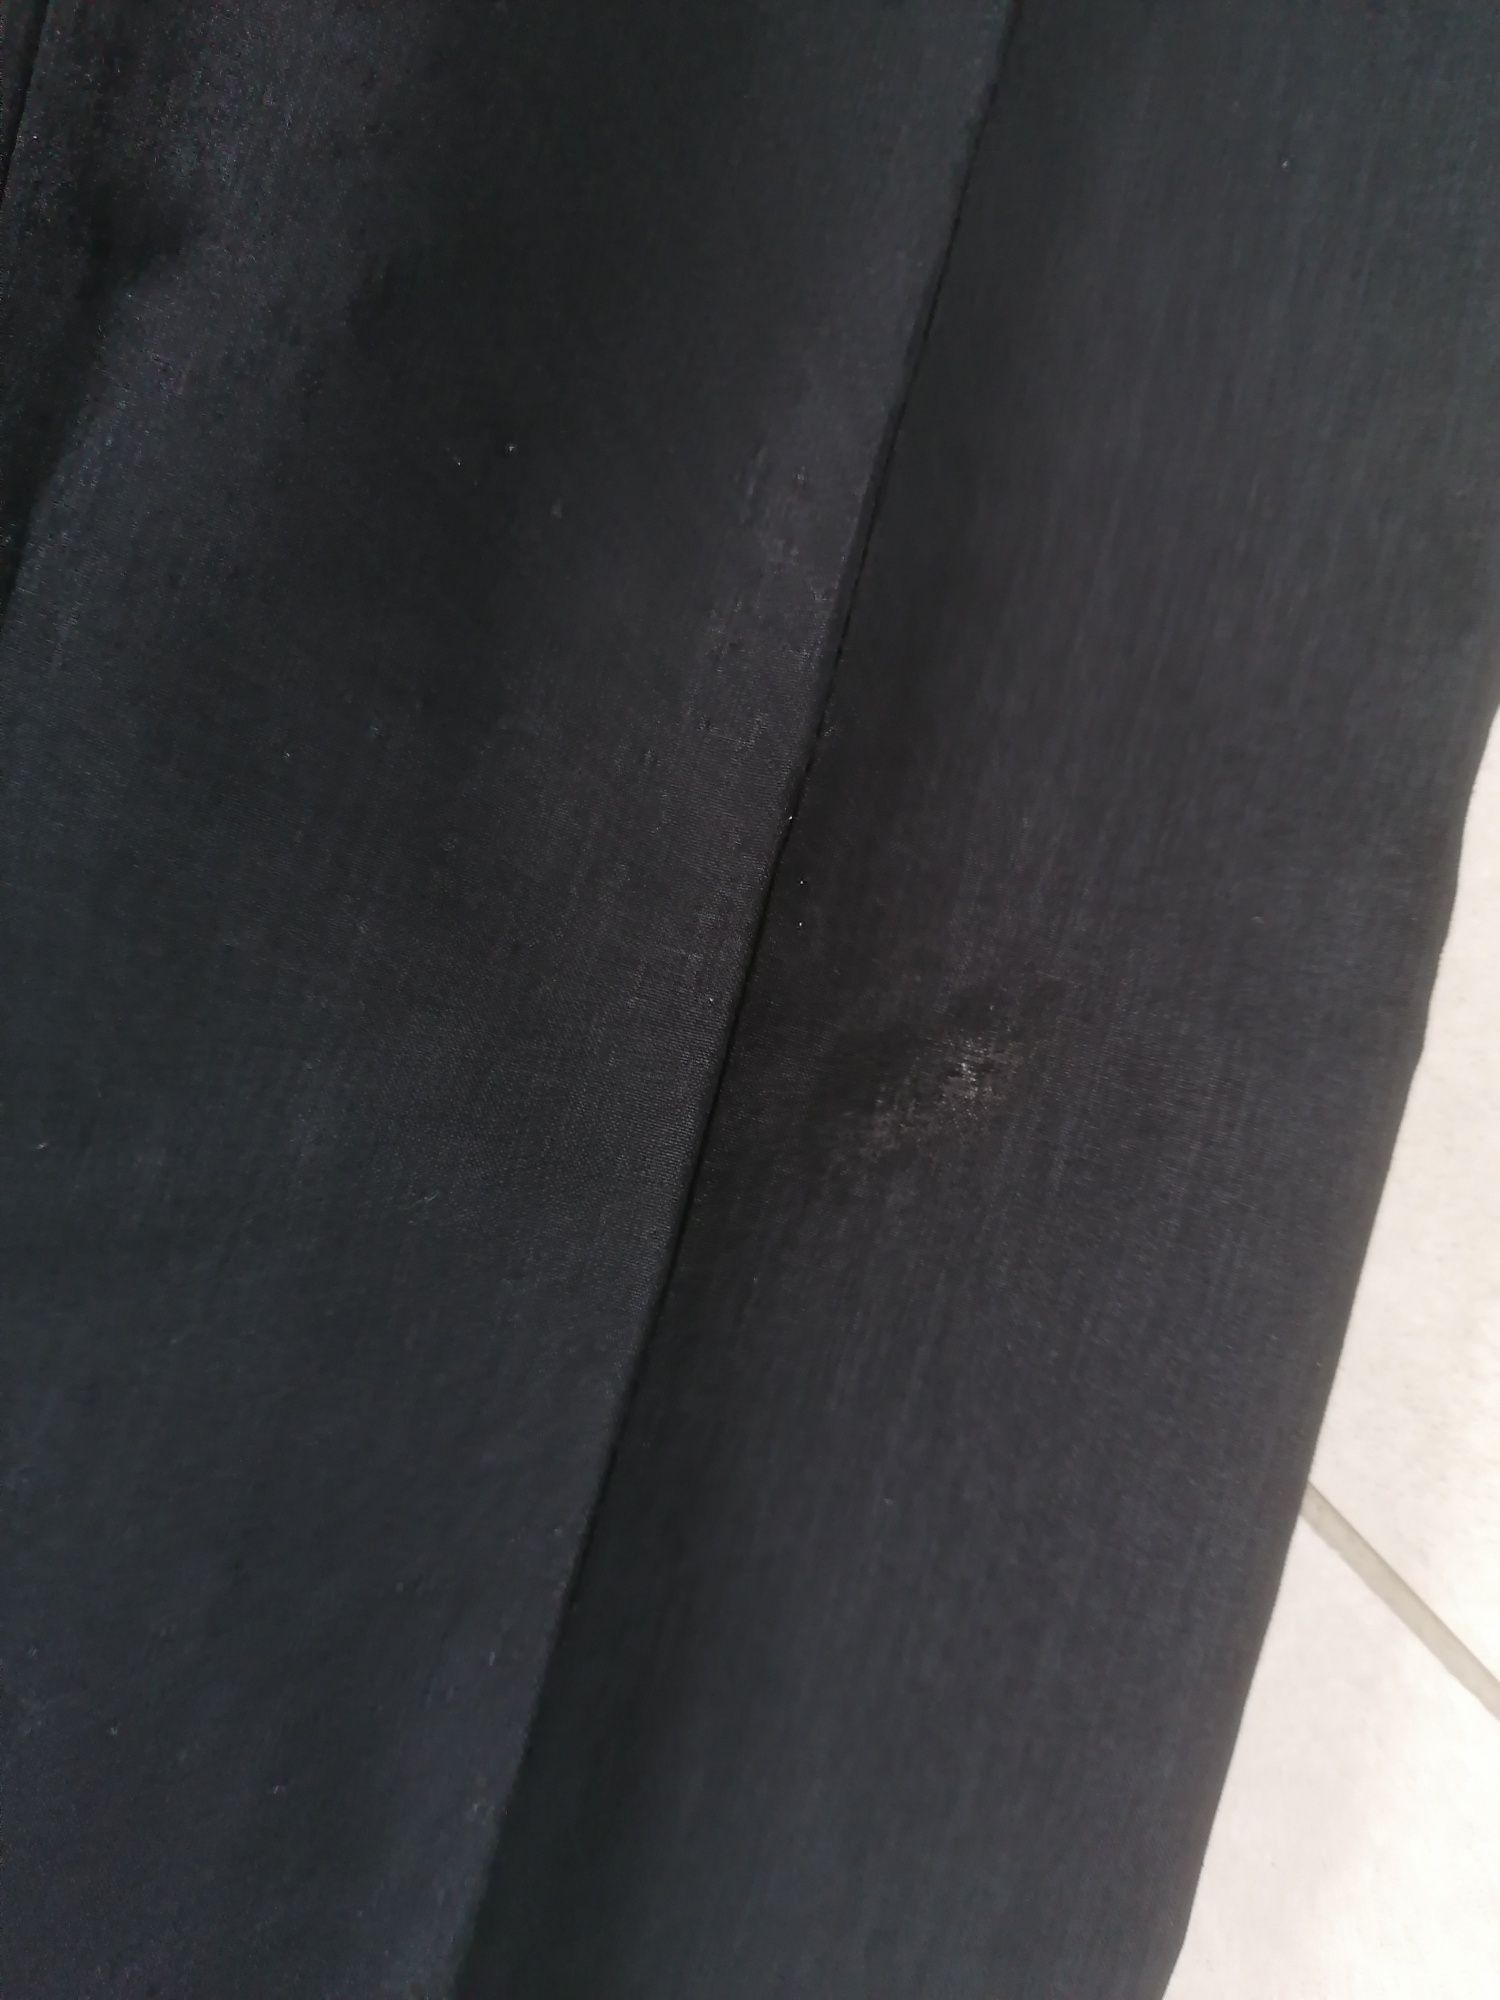 Spodnie chłopięce czarne eleganckie garnitur 140 146